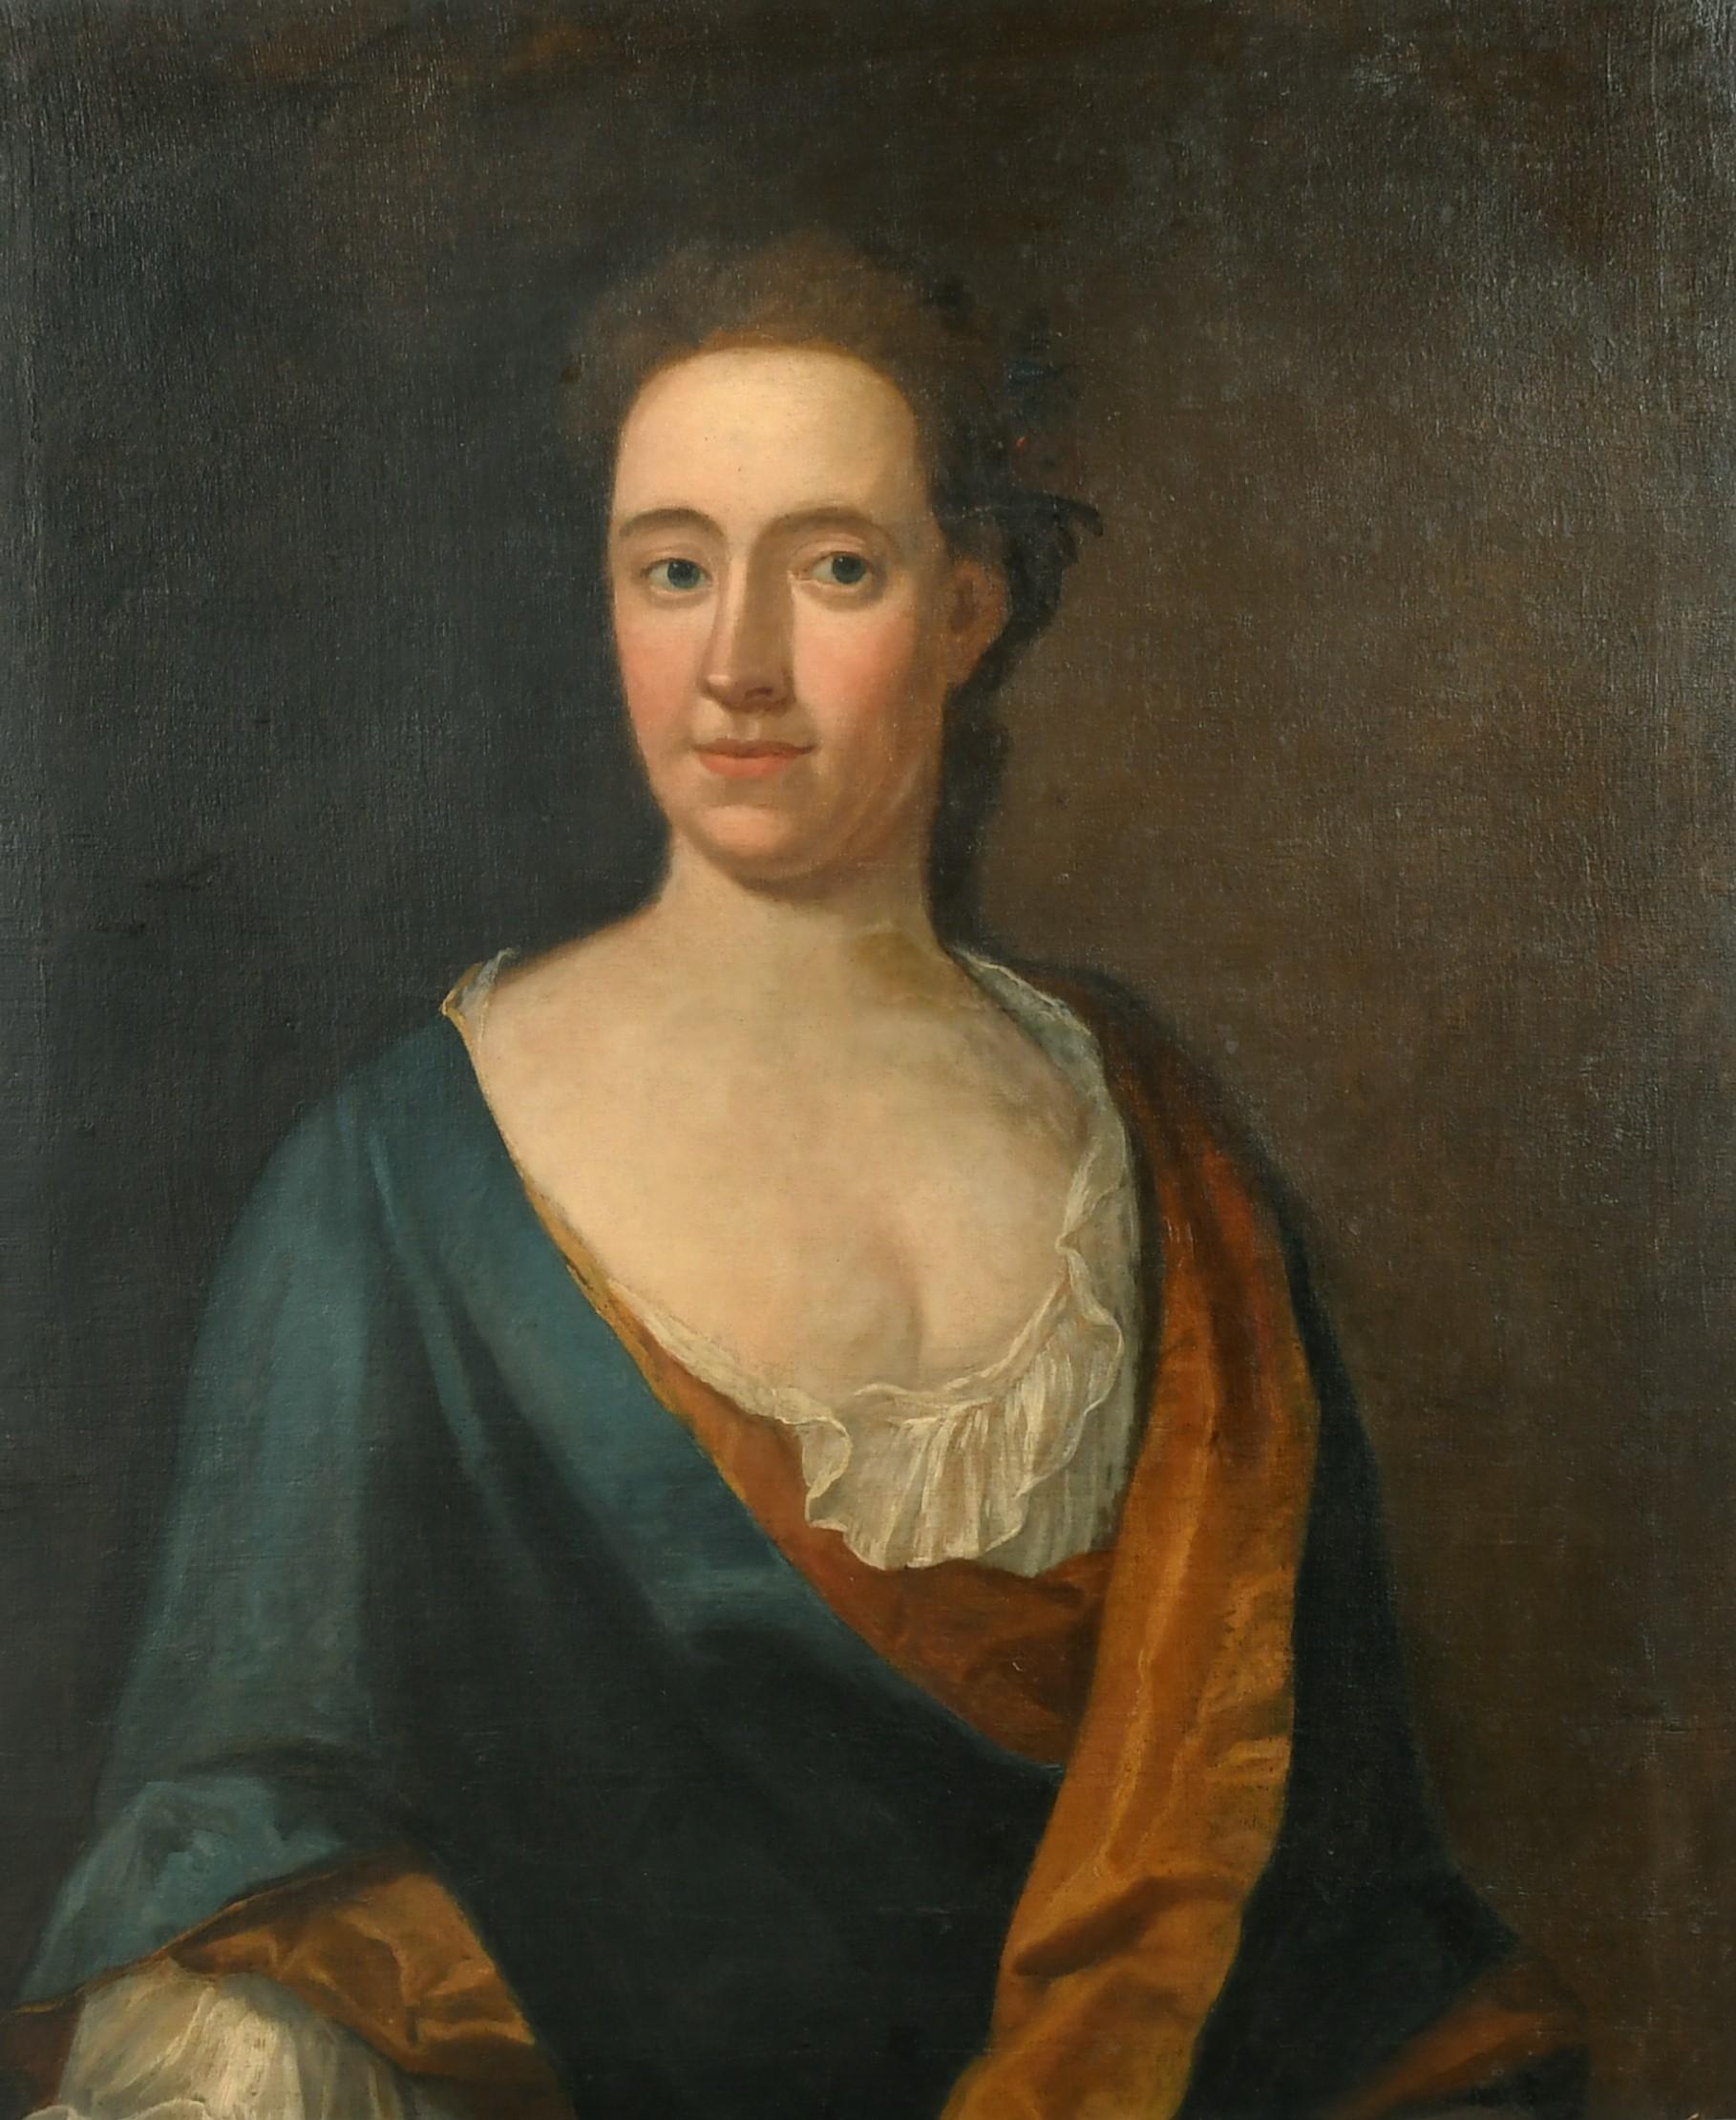 Schönes britisches Porträt einer aristokratischen Dame aus dem 18. Jahrhundert, großes Ölgemälde – Painting von Circle of Thomas Hudson (1701-1779) 